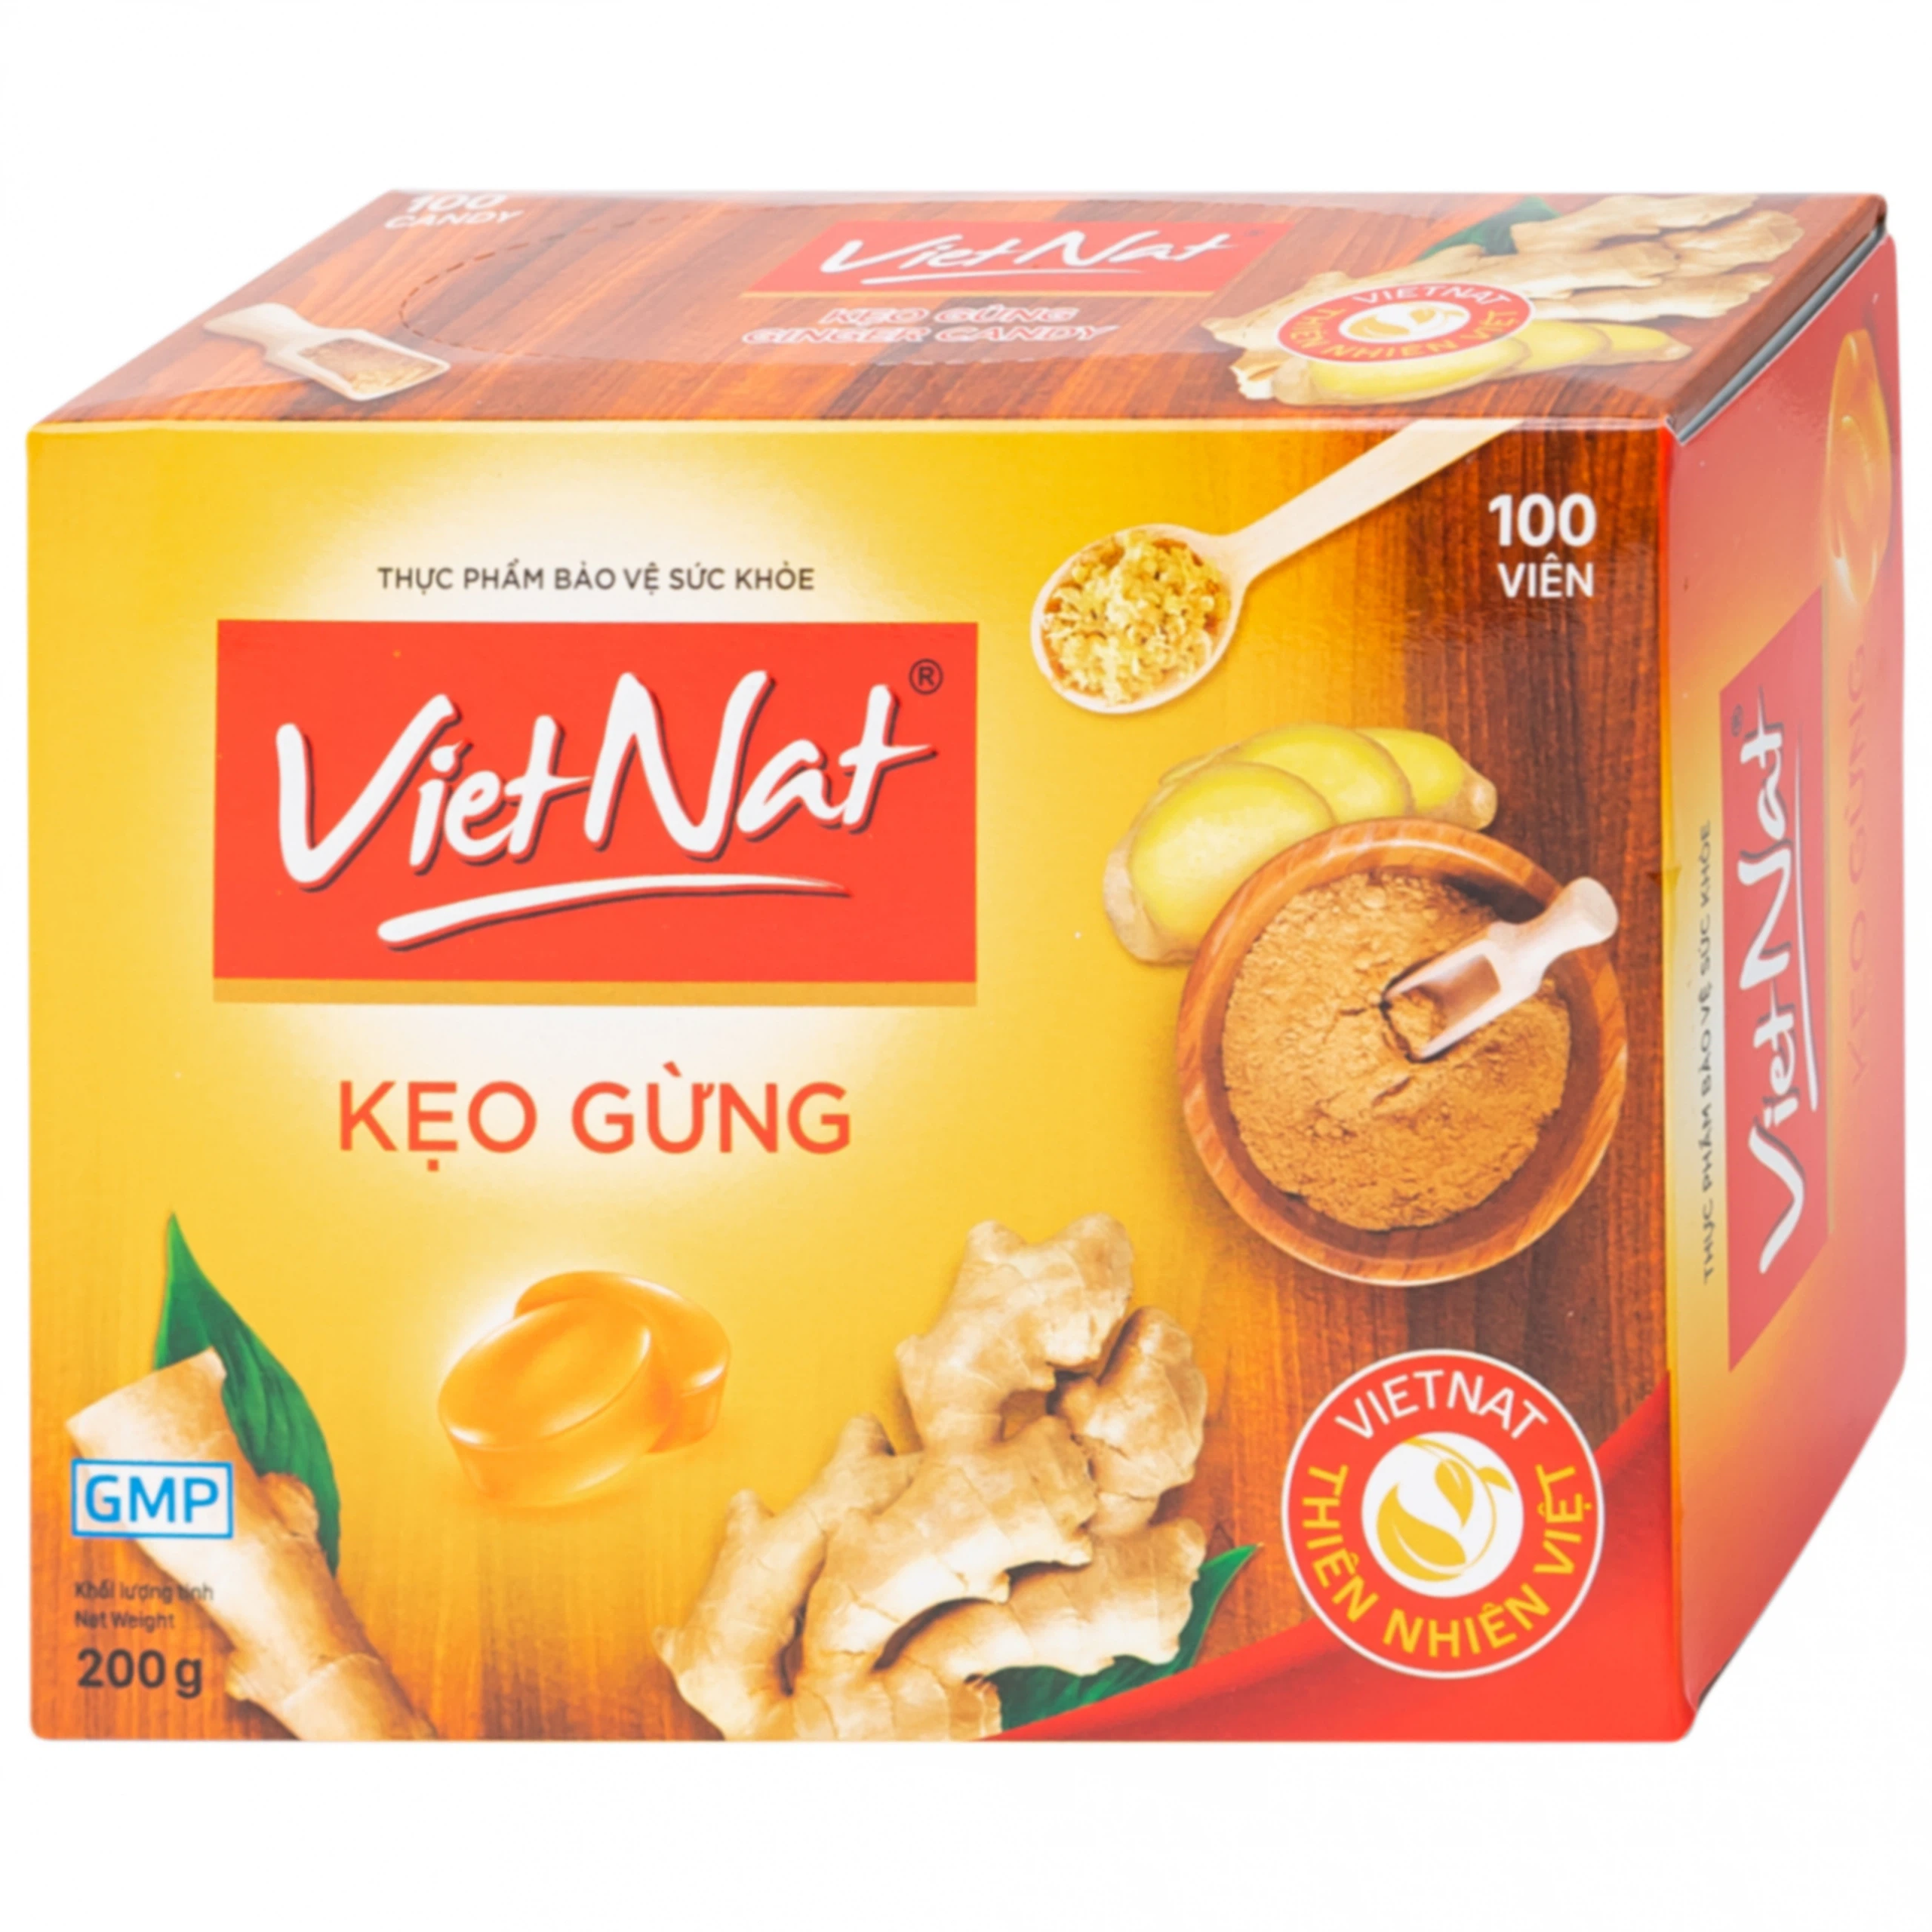 Kẹo gừng Vietnat hỗ trợ làm ấm tỳ vị, giảm nôn và các triệu chứng ăn không tiêu đầy hơi (100 viên)